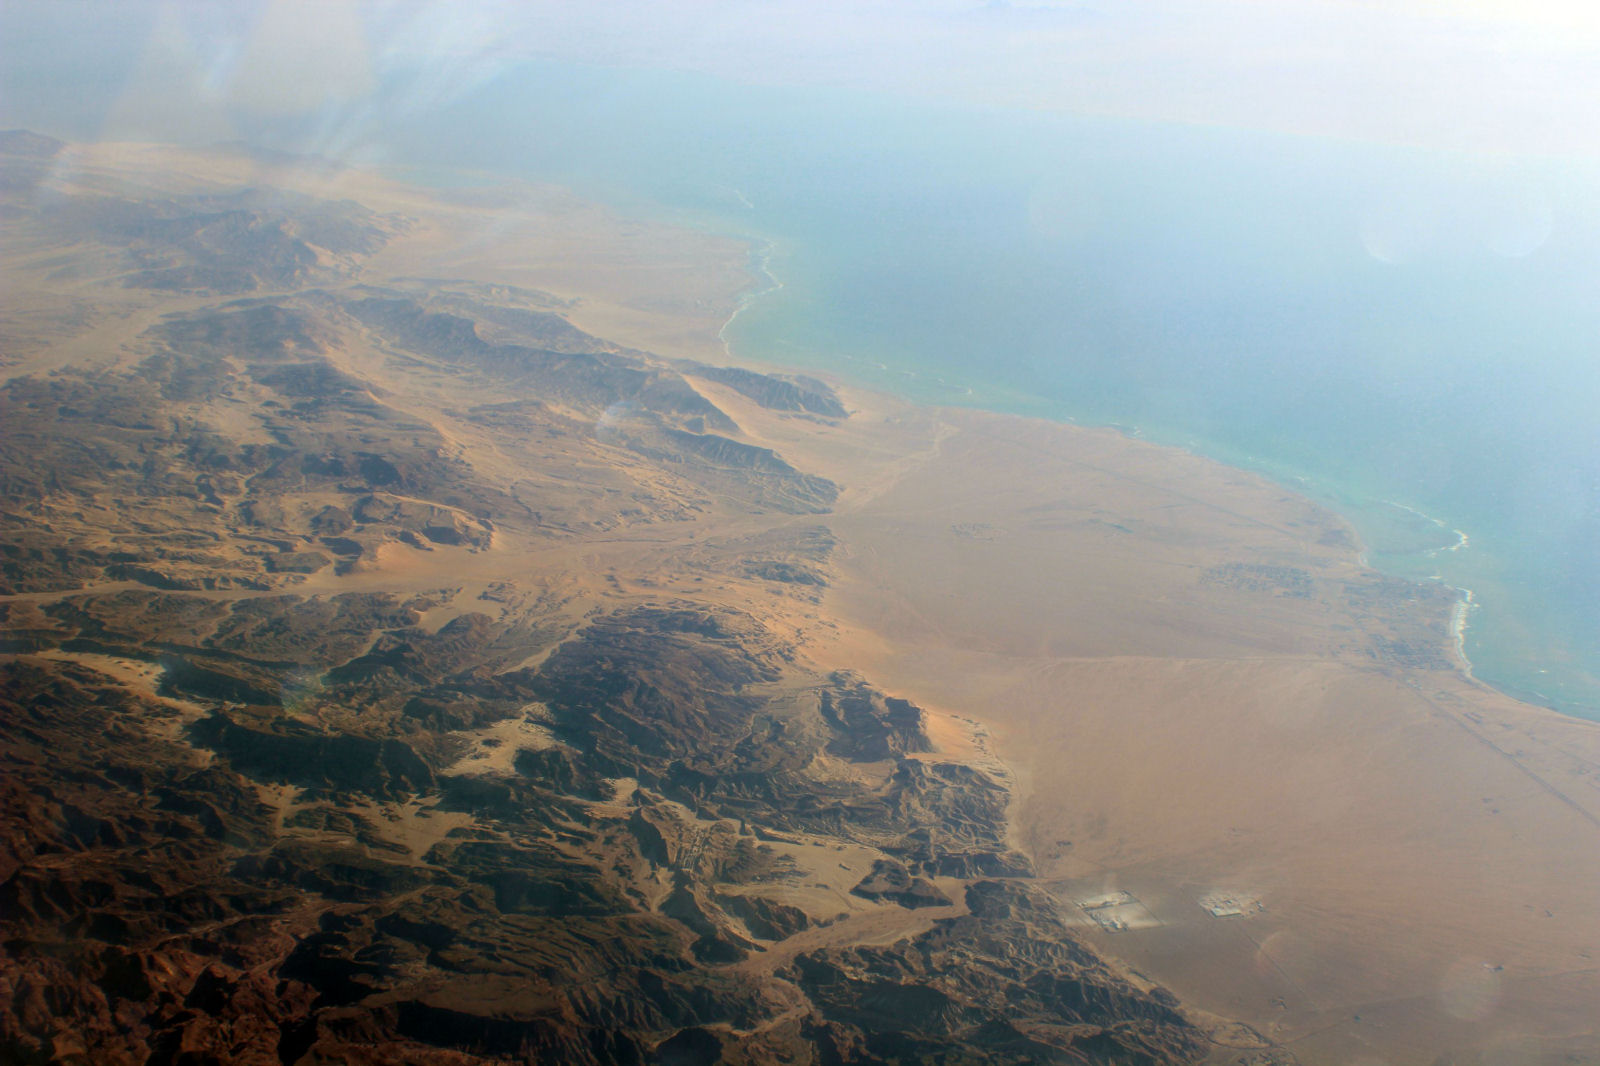 Deserto de Sinai